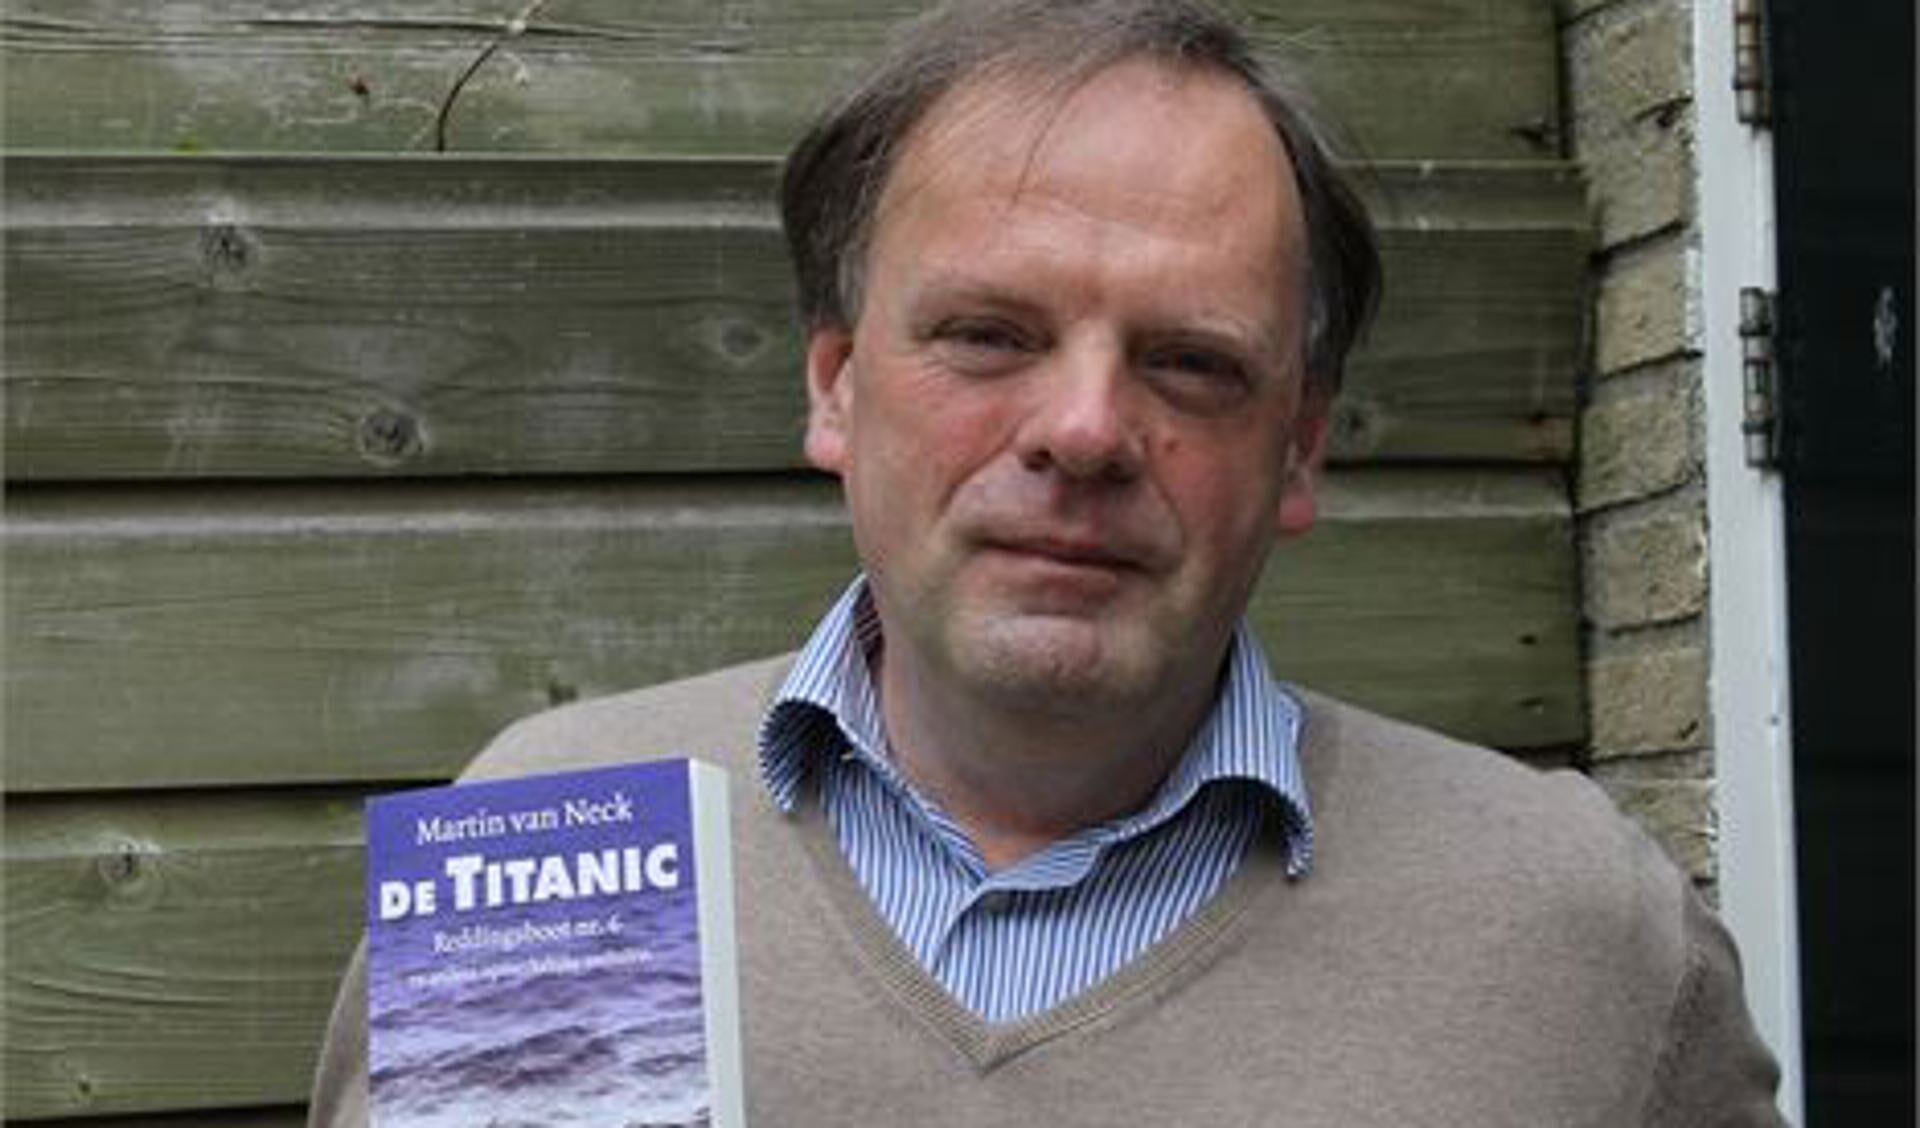 Martin van Neck met zijn boek over de Titanic. Foto: Bart Bakker